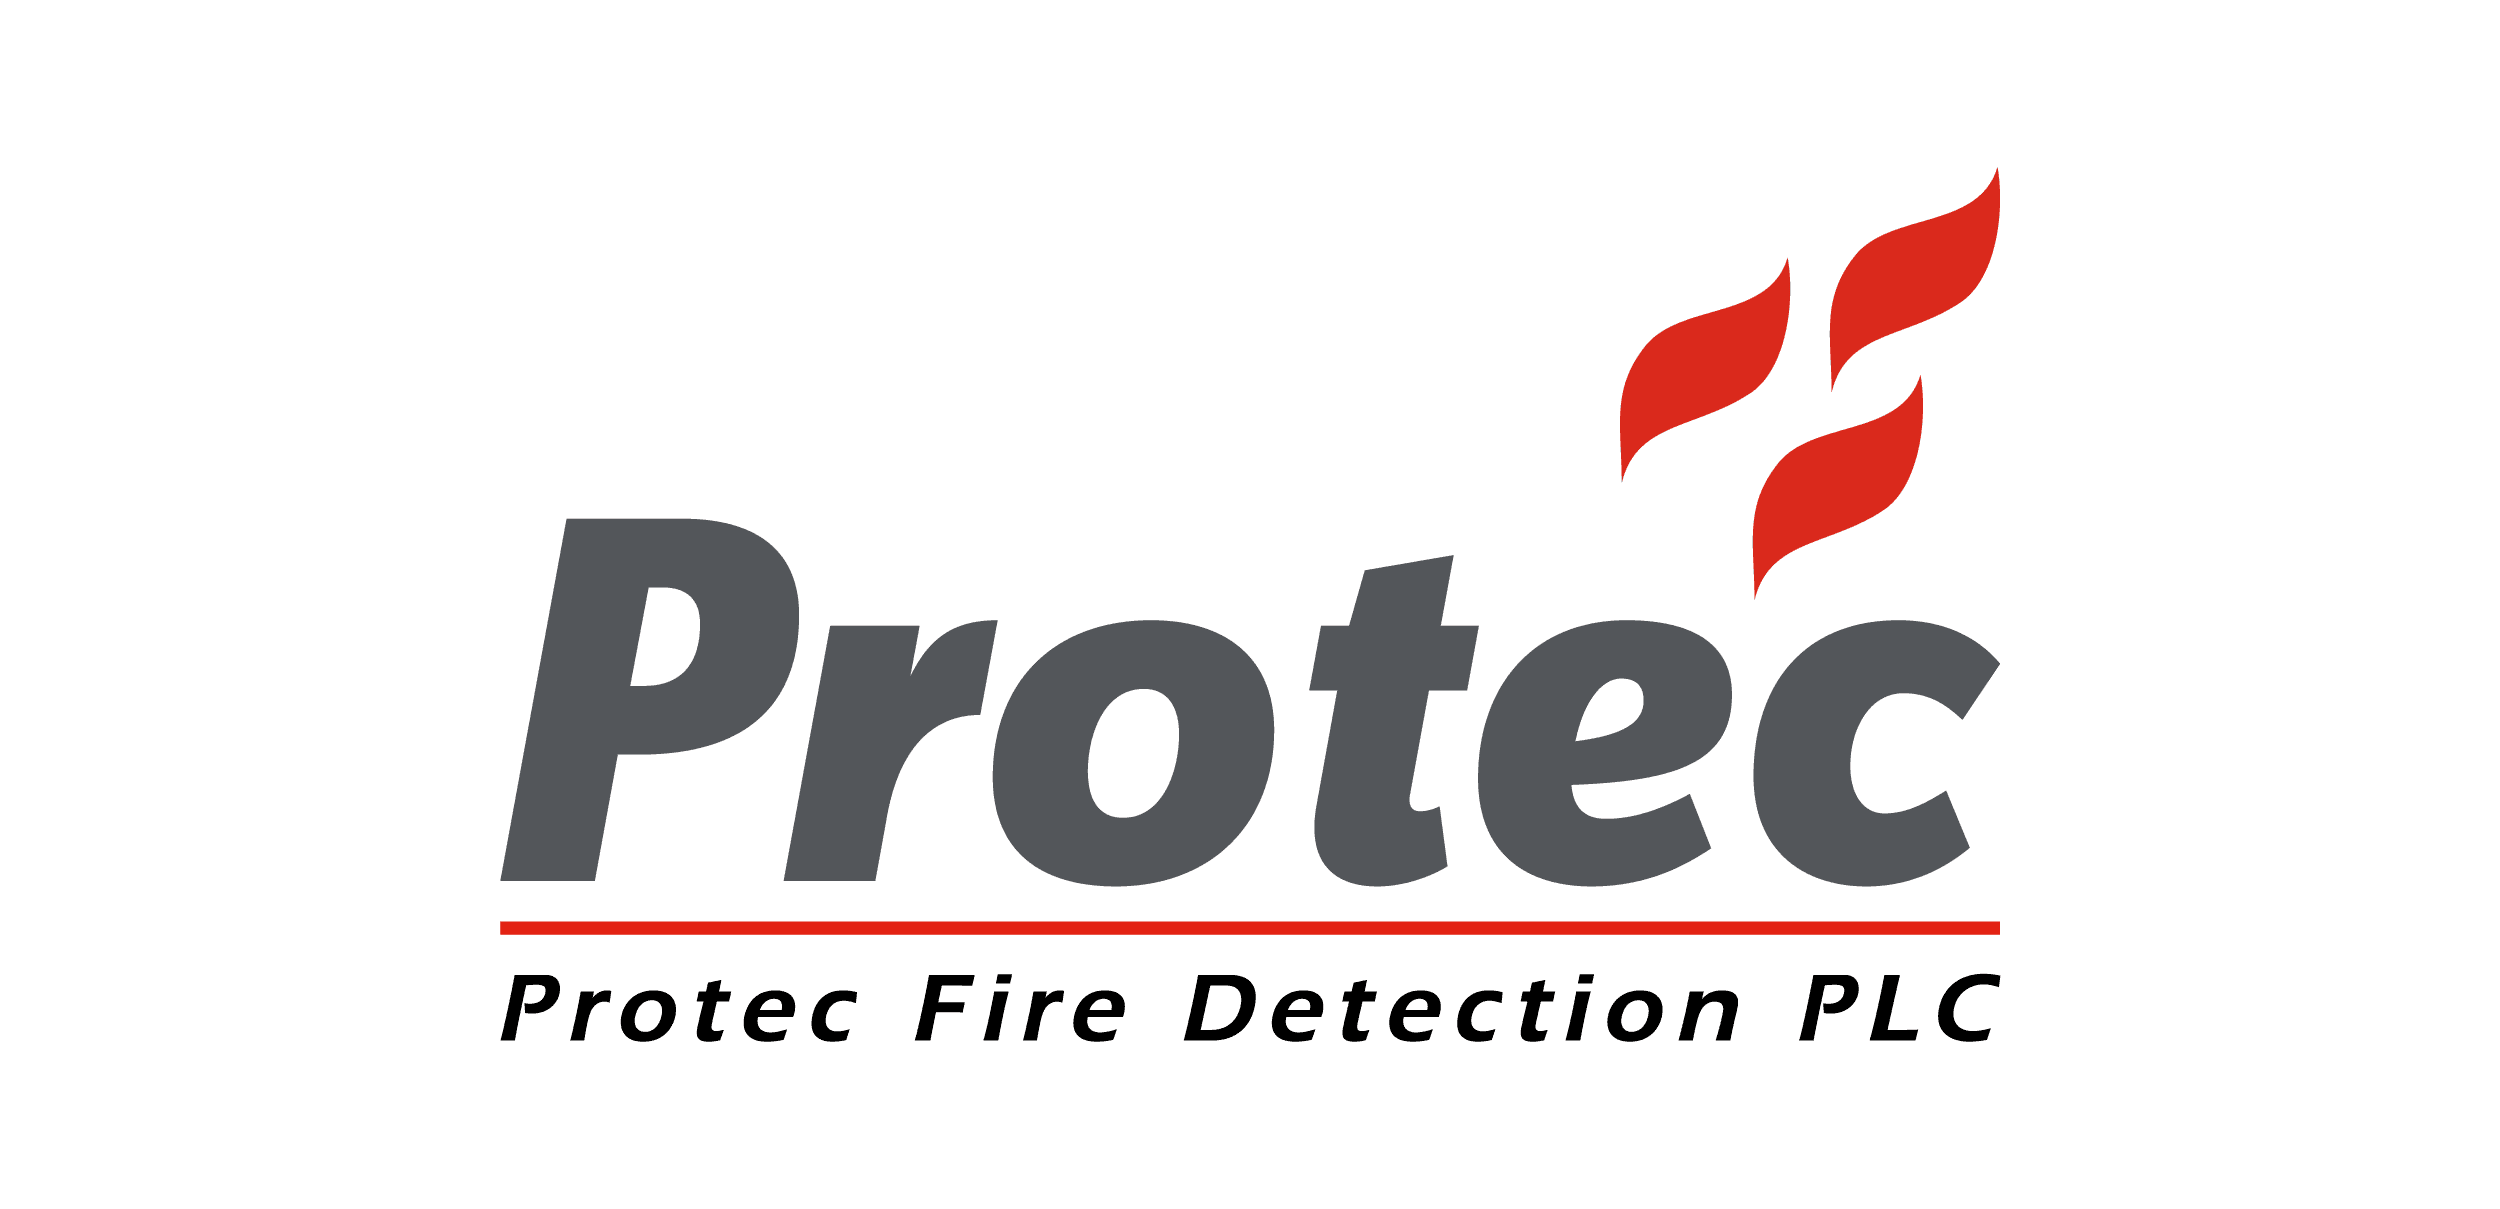 Protec Fire Detection PLC - Home